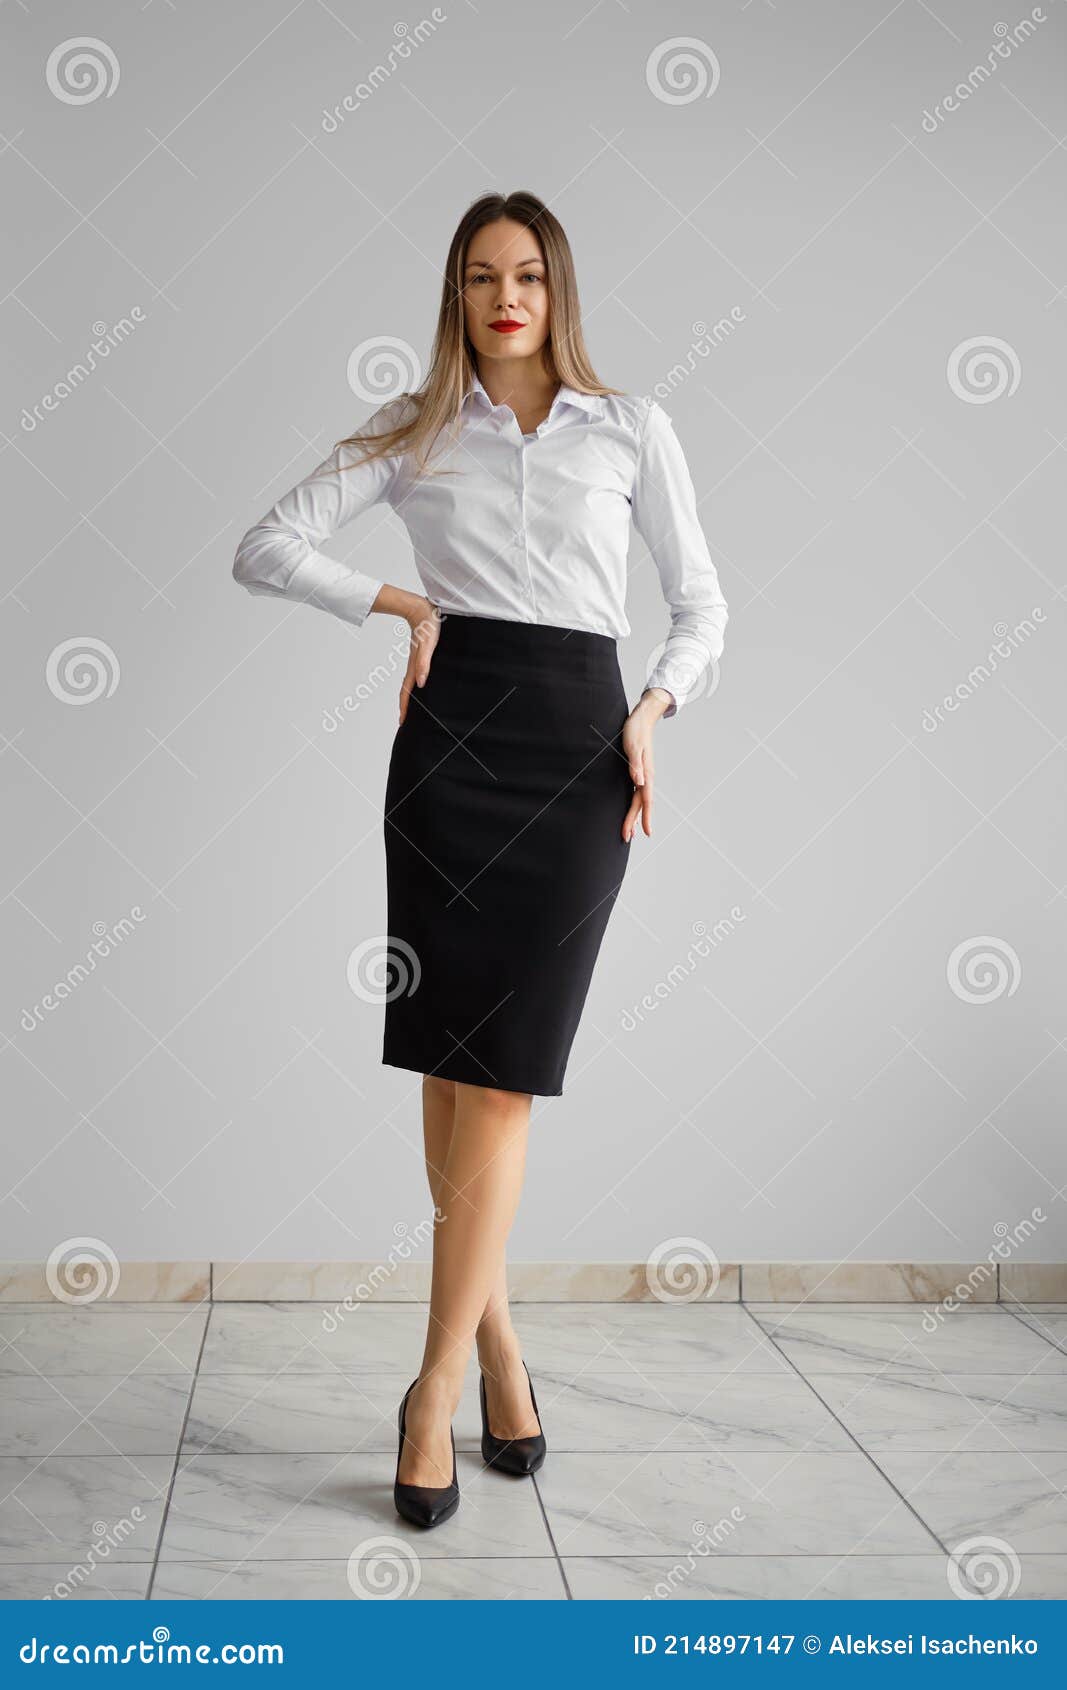 Oficina De Código De Vestir Chica Bonita En Camisa Blanca Y Ajustada Falda Negra. Imagen de archivo Imagen de negocios, equipo: 214897147